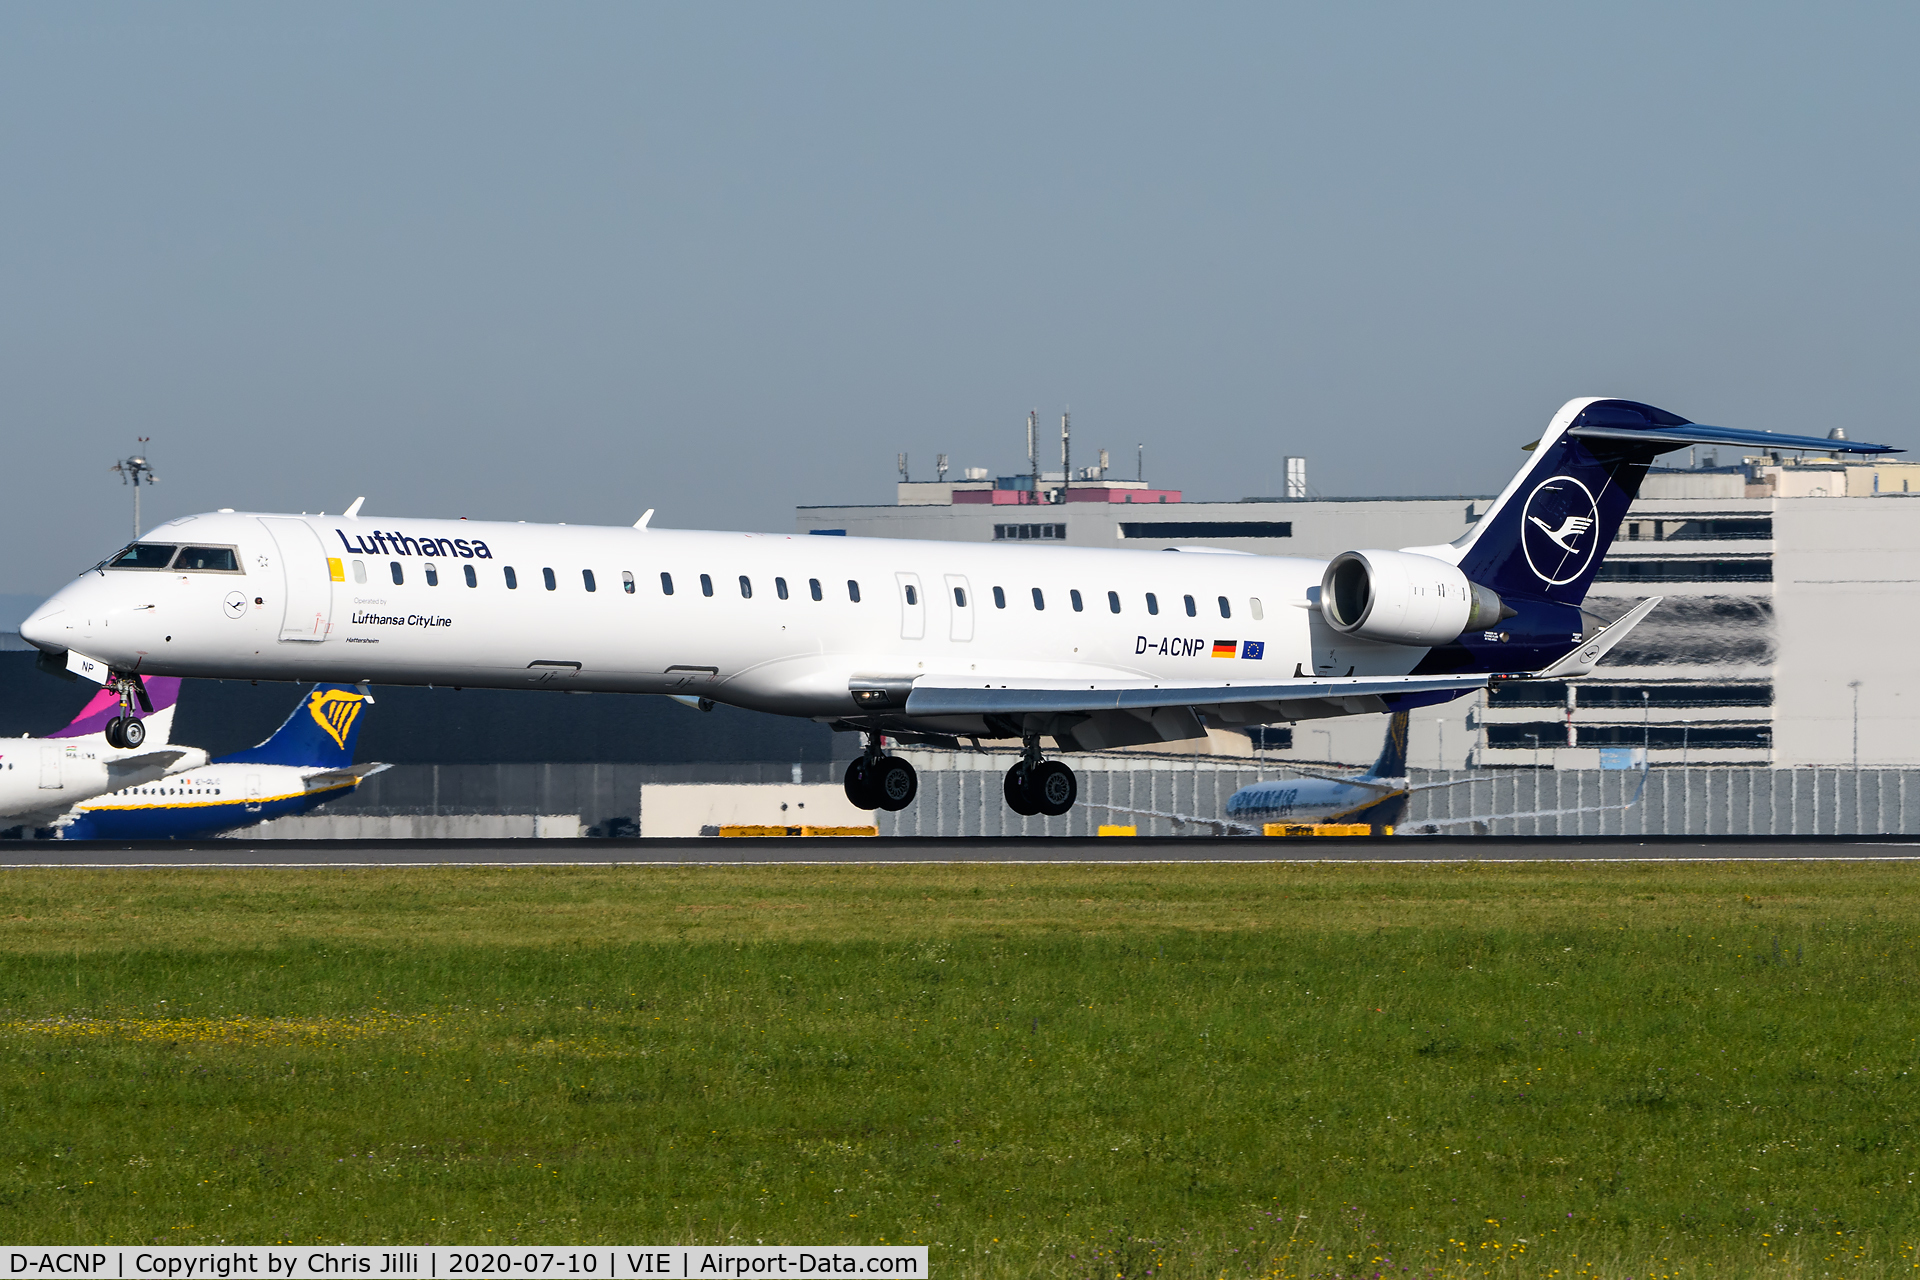 D-ACNP, 2010 Bombardier CRJ-900LR (CL-600-2D24) C/N 15259, Lufthansa Regional